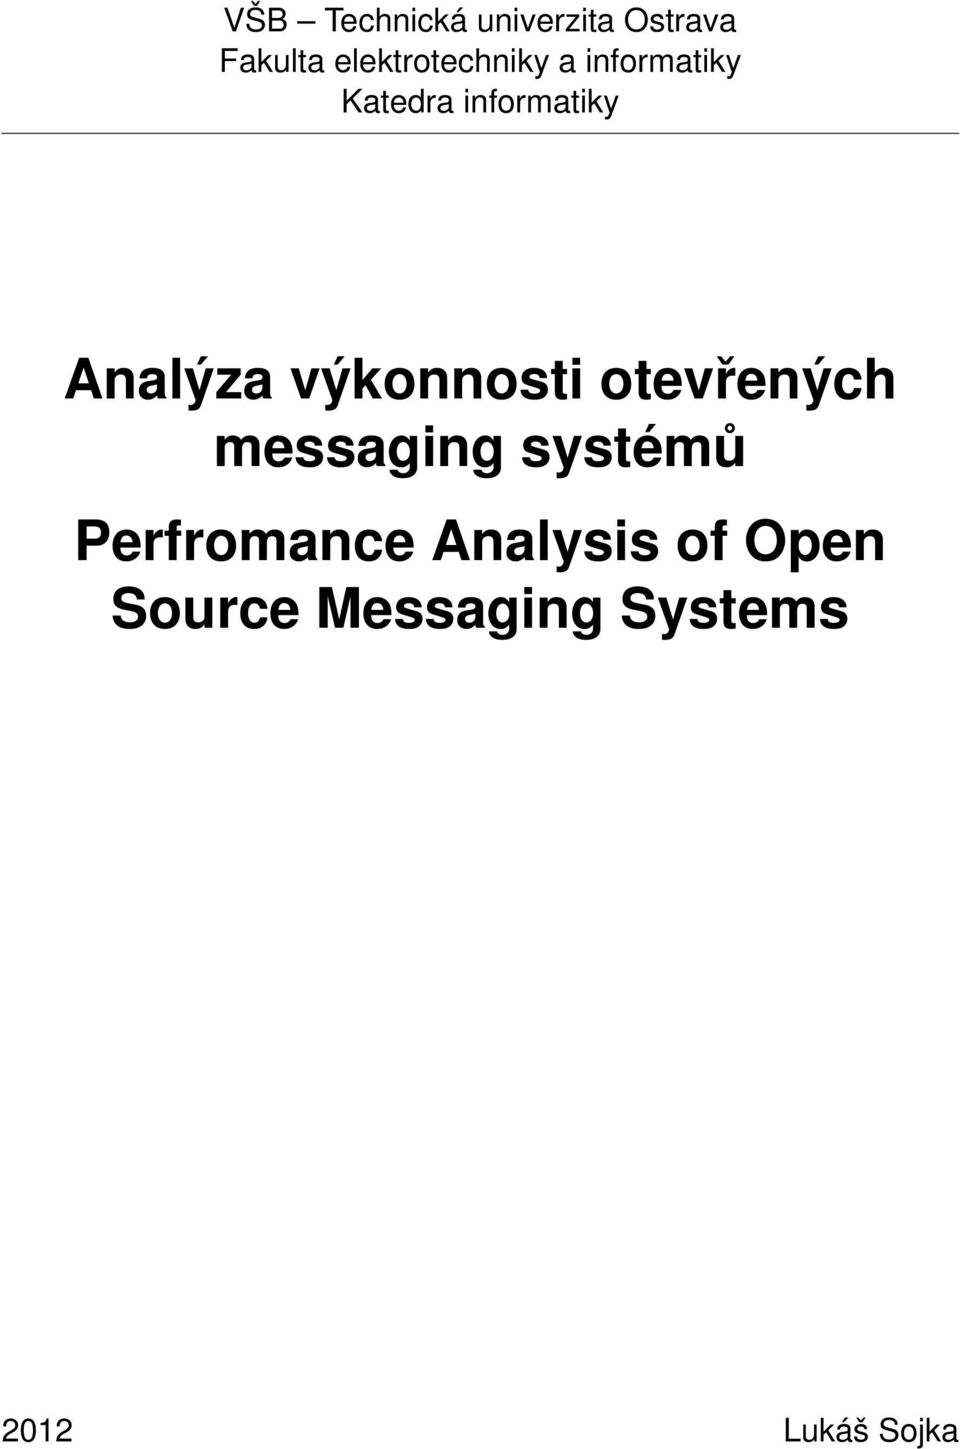 Analýza výkonnosti otevřených messaging systémů